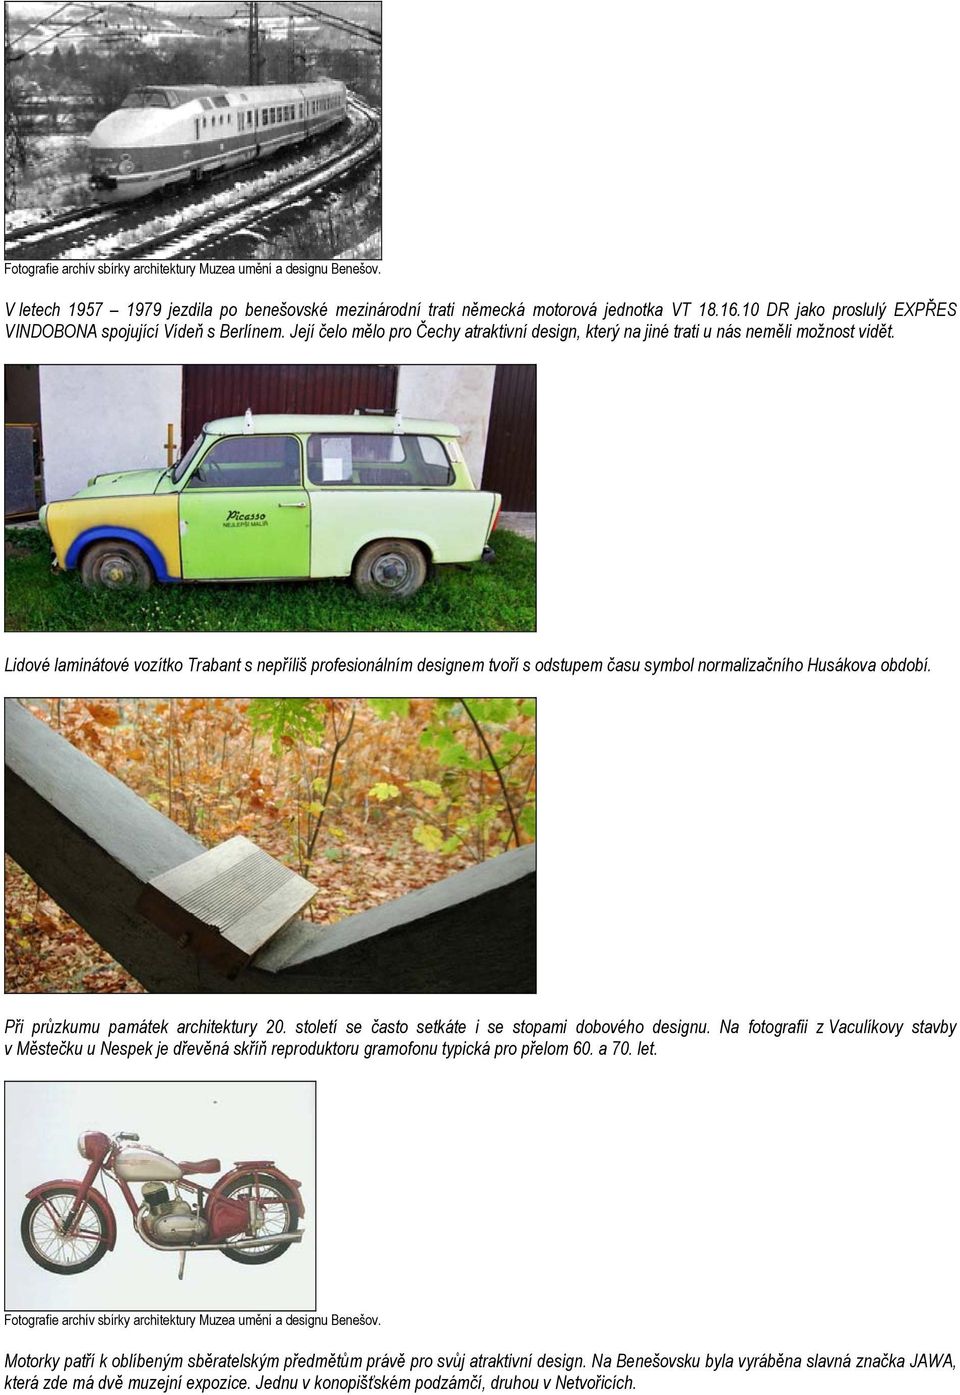 Lidové laminátové vozítko Trabant s nepříliš profesionálním designem tvoří s odstupem času symbol normalizačního Husákova období. Při průzkumu památek architektury 20.